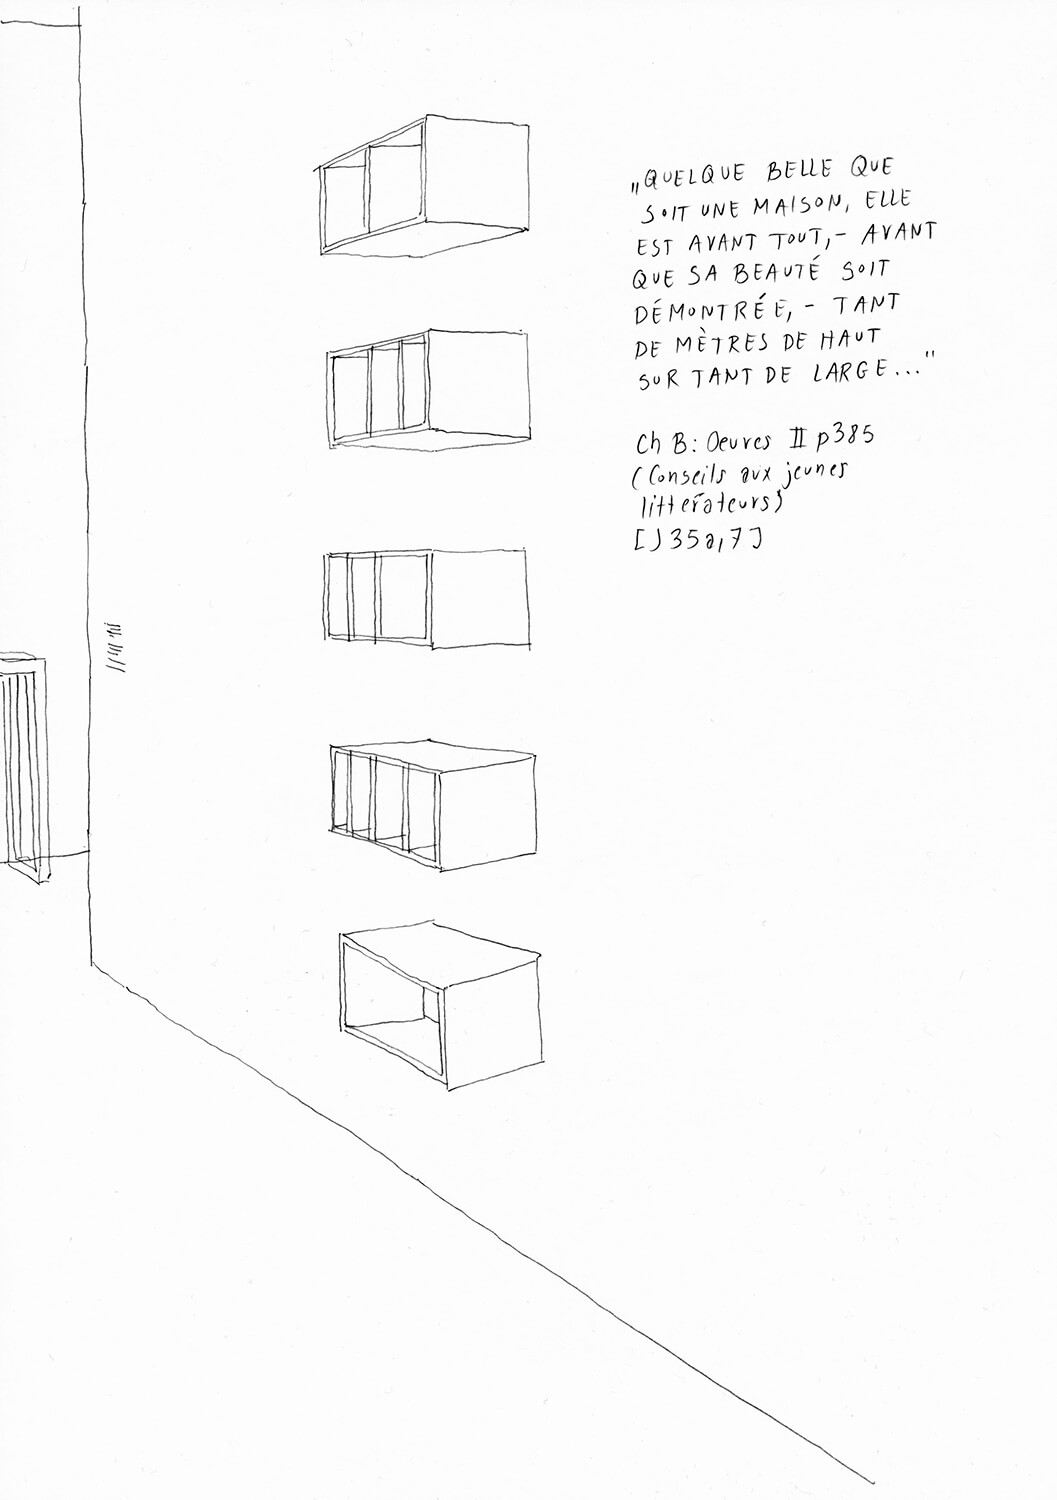 Matthias Beckmann, Passagen-Werk (102), 2019/2020, pencil on paper, 29.7 x 21 cm